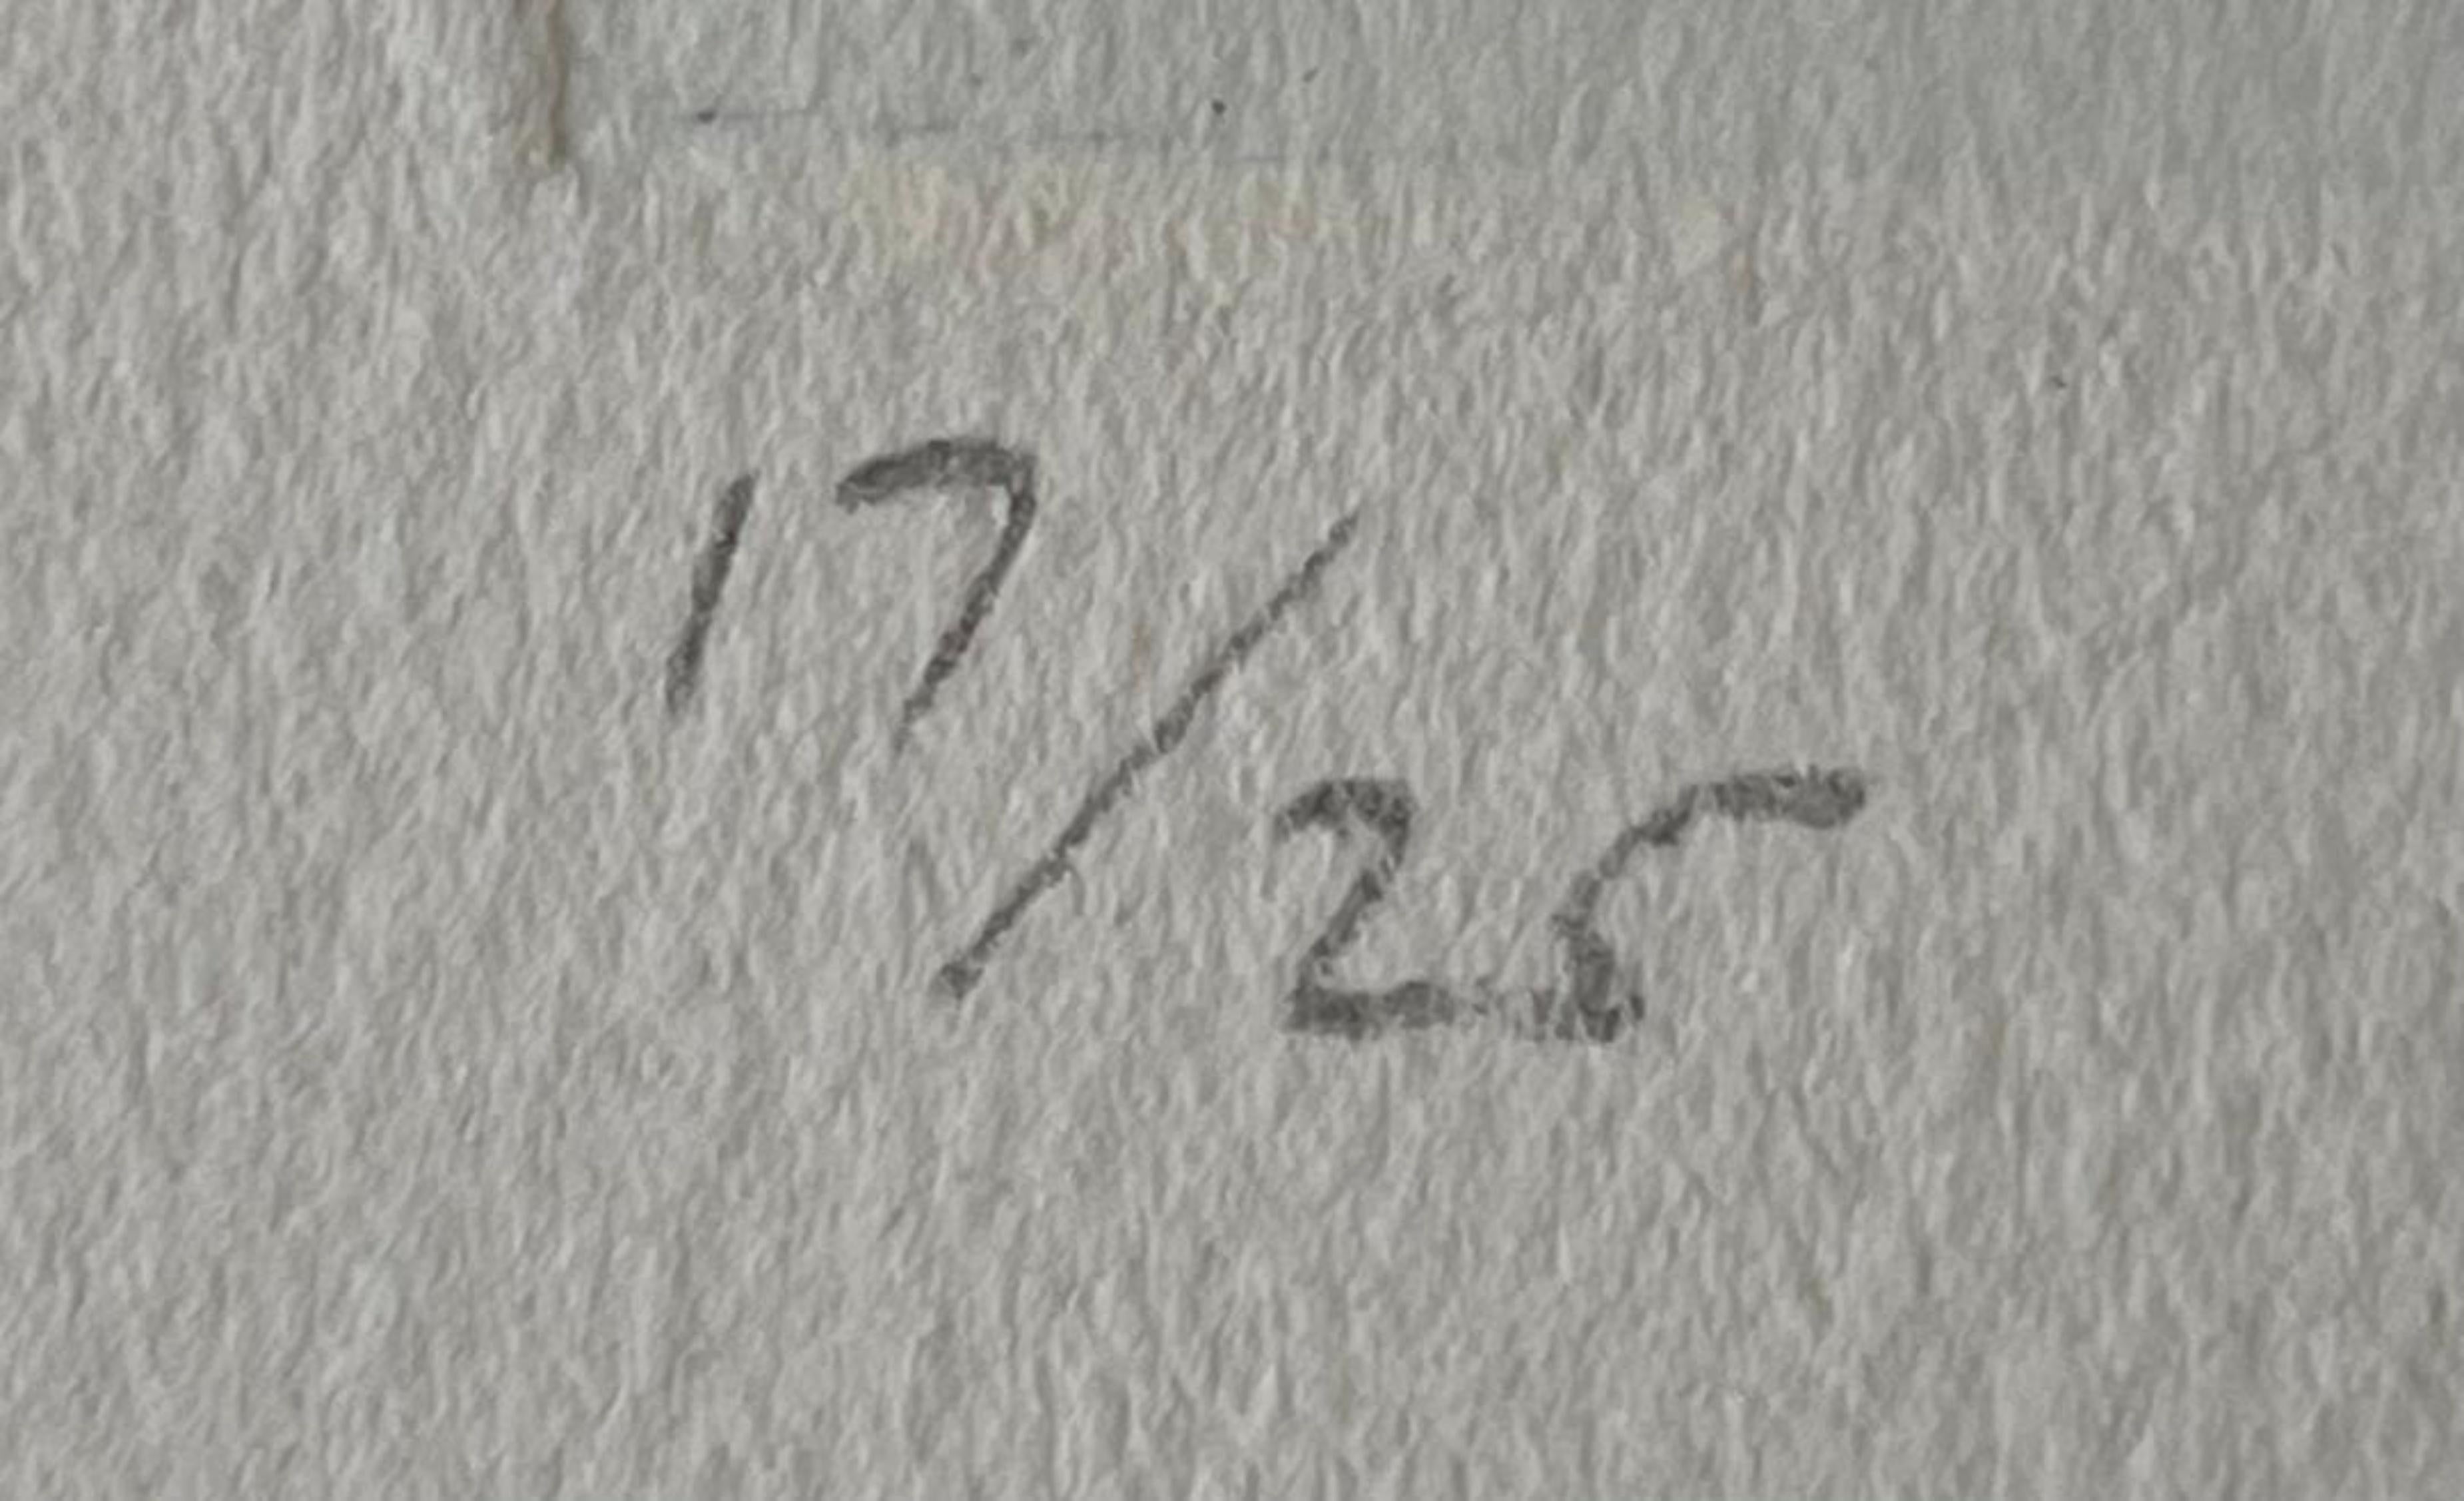 Richard Smith
Signature, 1997
Gravure et aquatinte
22 3/4 × 18 pouces
Edition 17/25
Signé et numéroté 17/25 à la mine de plomb sur la partie inférieure du recto